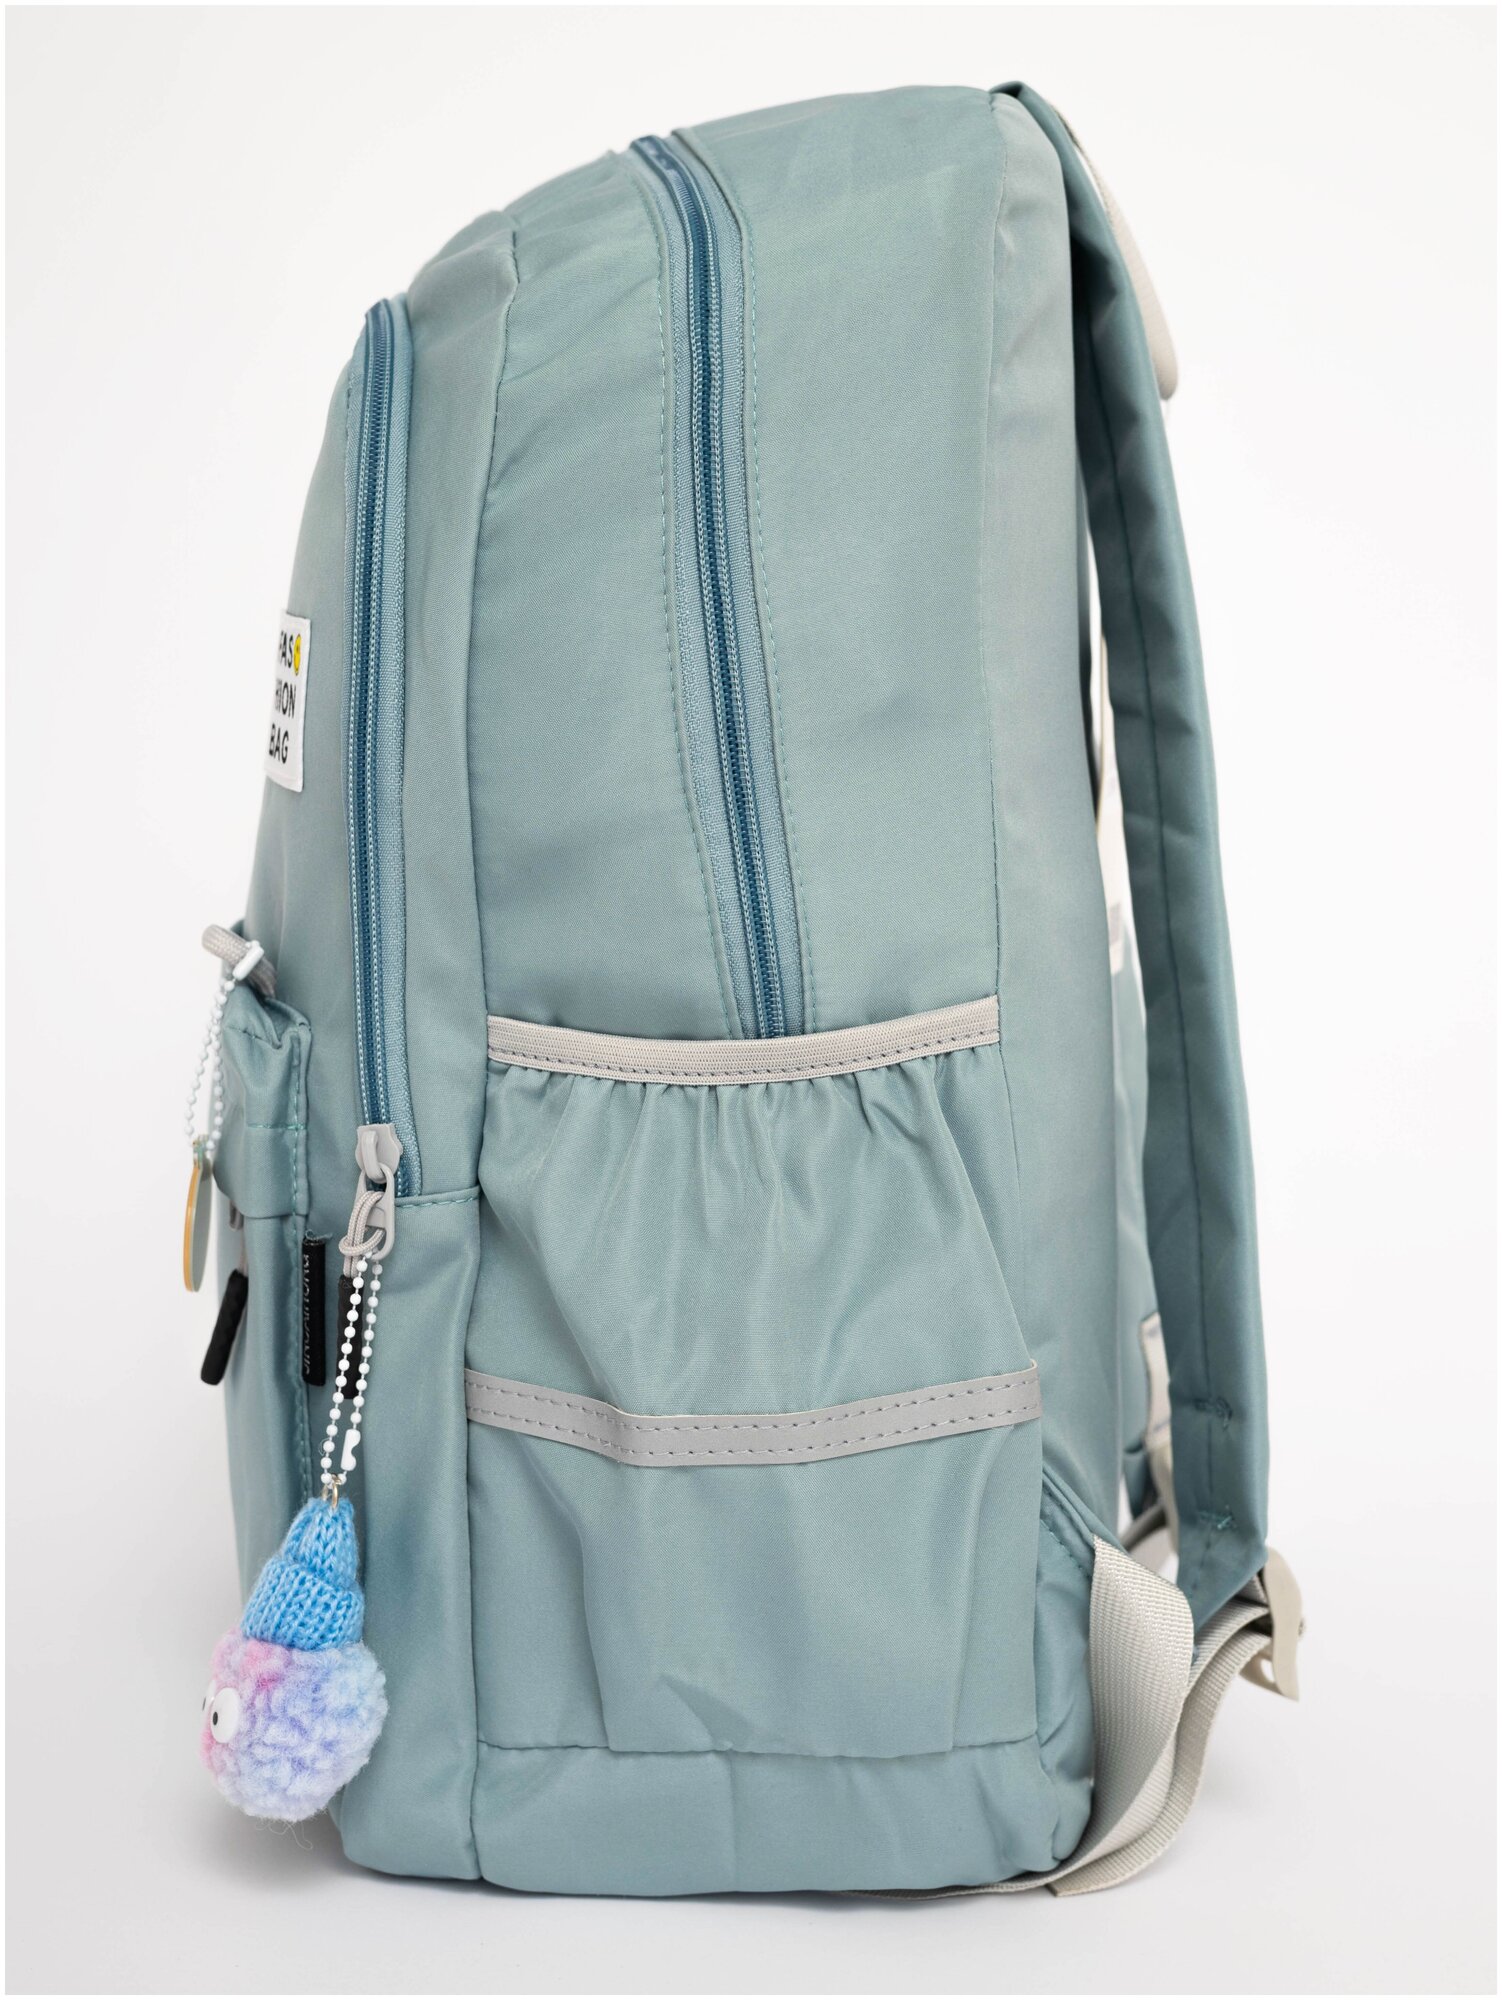 Рюкзак женский текстильный голубой 21 л городской для женщин девушек девочек подростков